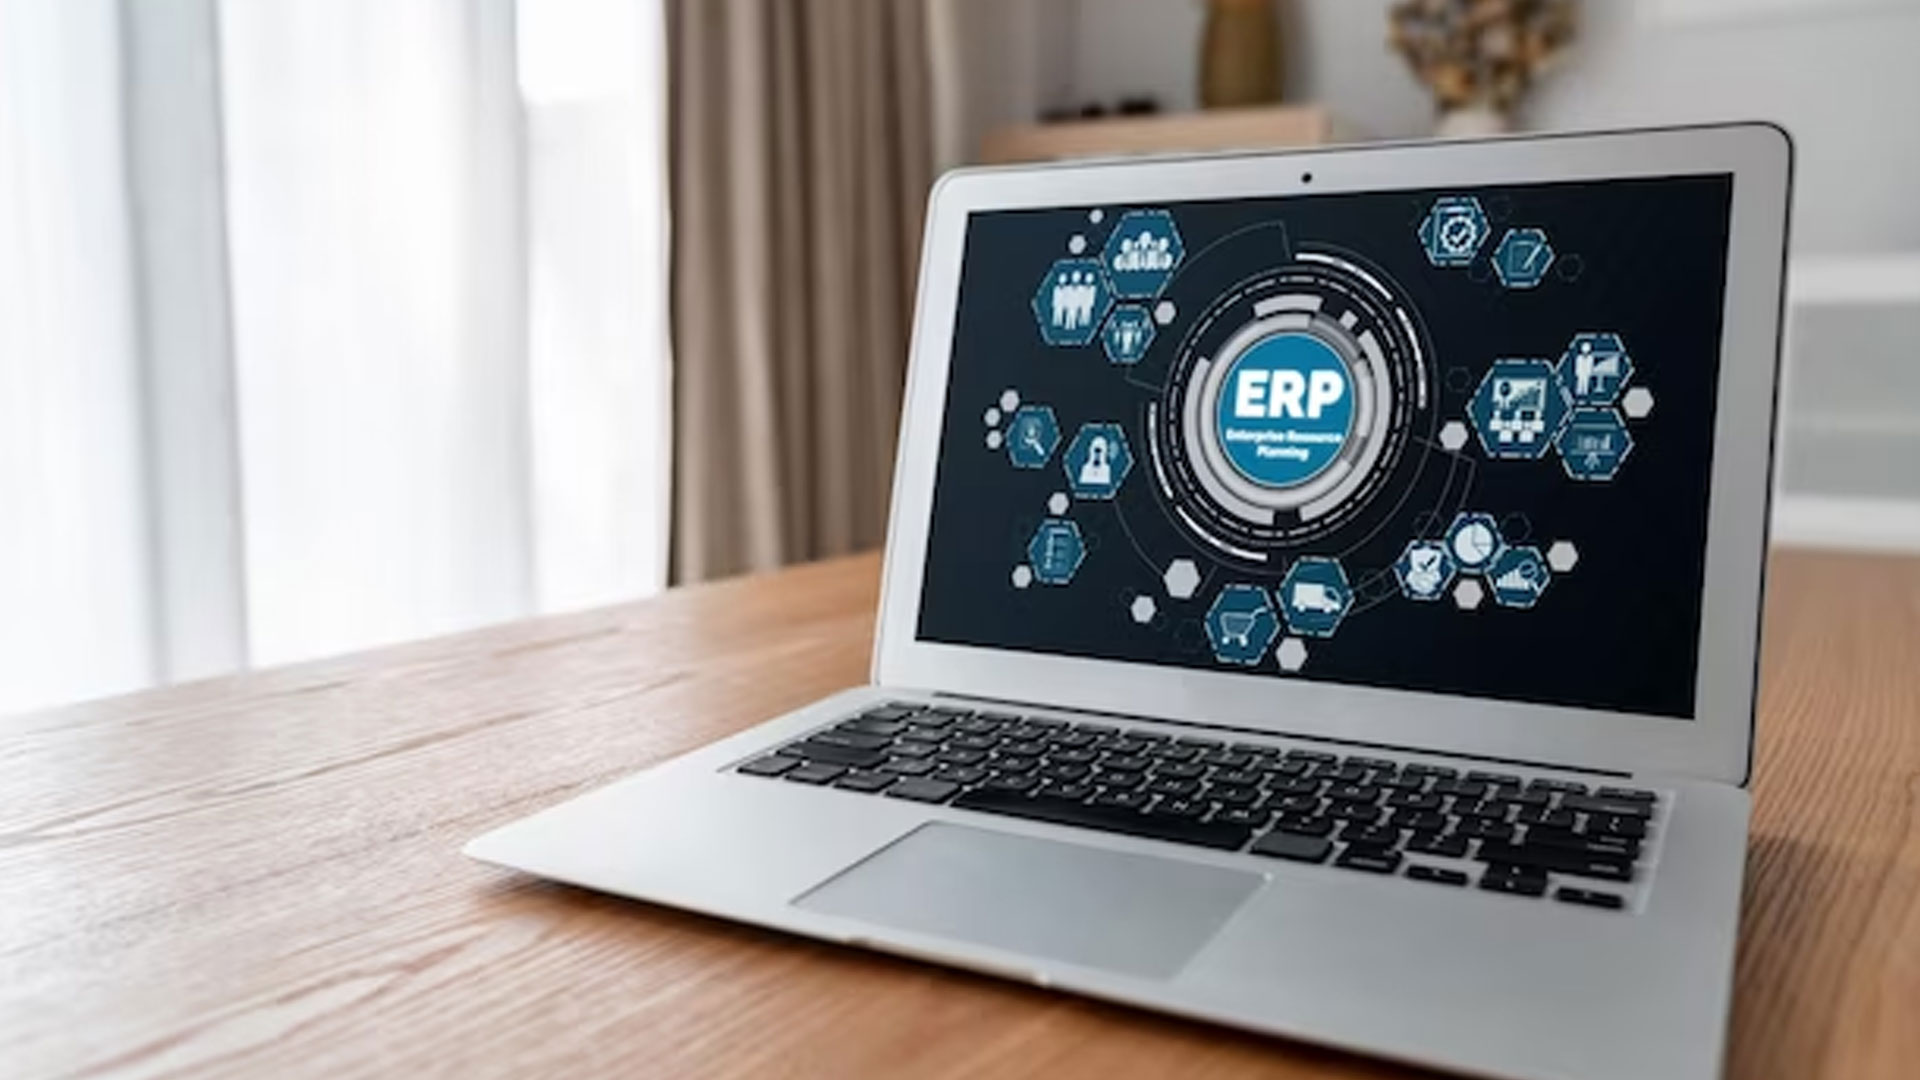 Phần mềm ERP không chỉ là một nhu cầu mà còn là một yêu cầu của doanh nghiệp sản xuất trong thời đại cách mạng công nghiệp 4.0. Phần mềm ERP là ứng dụng được tích hợp đầy đủ các tính năng quản trị, sản xuất và tự động hoá mọi nguồn lực liên quan đến doanh nghiệp. Vậy doanh nghiệp sản xuất nên lựa chọn phần mềm ERP nào?